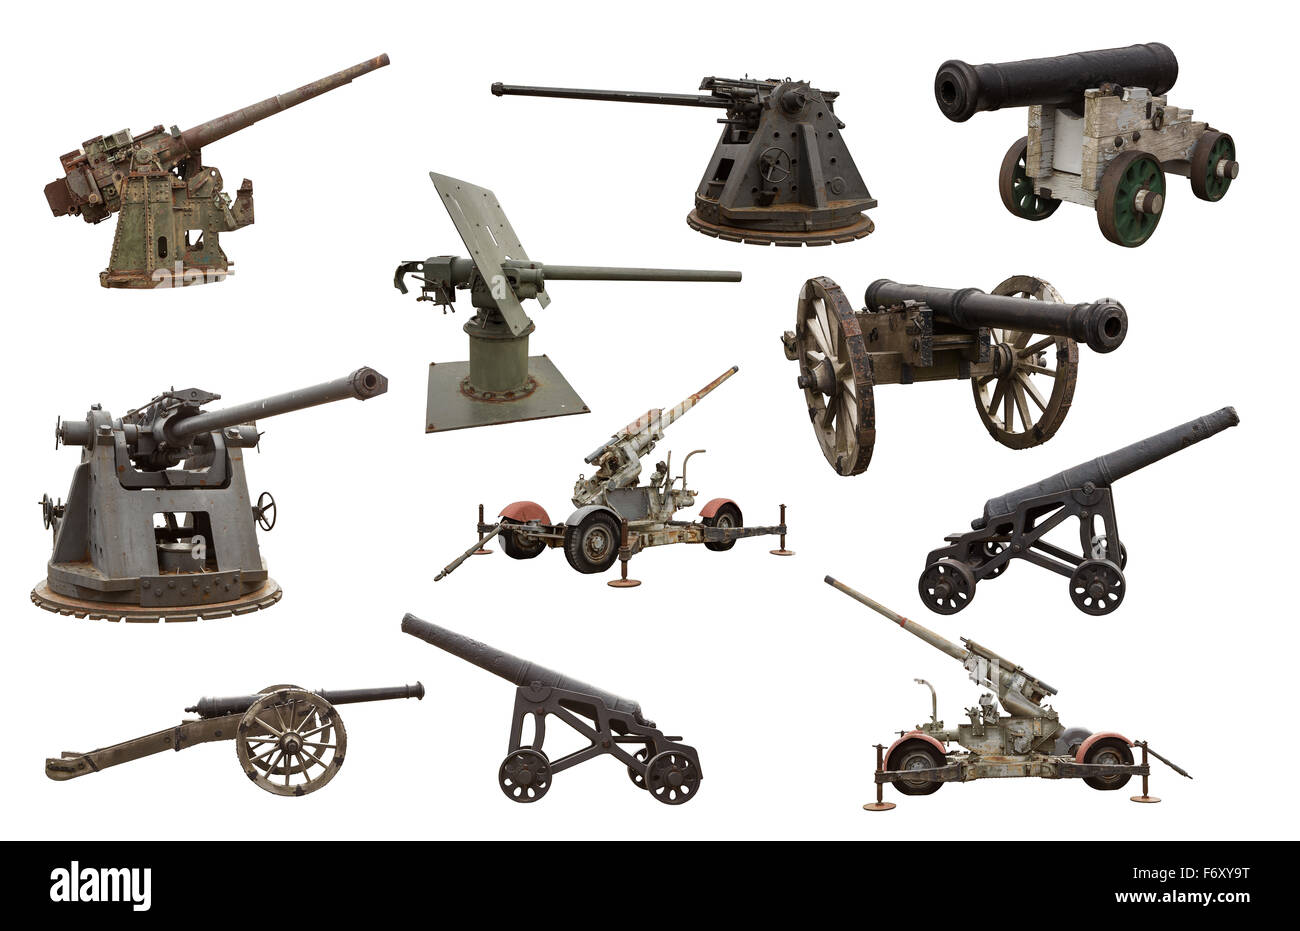 Recortar imagen de muchos fusiles y cañones de guerra Foto de stock